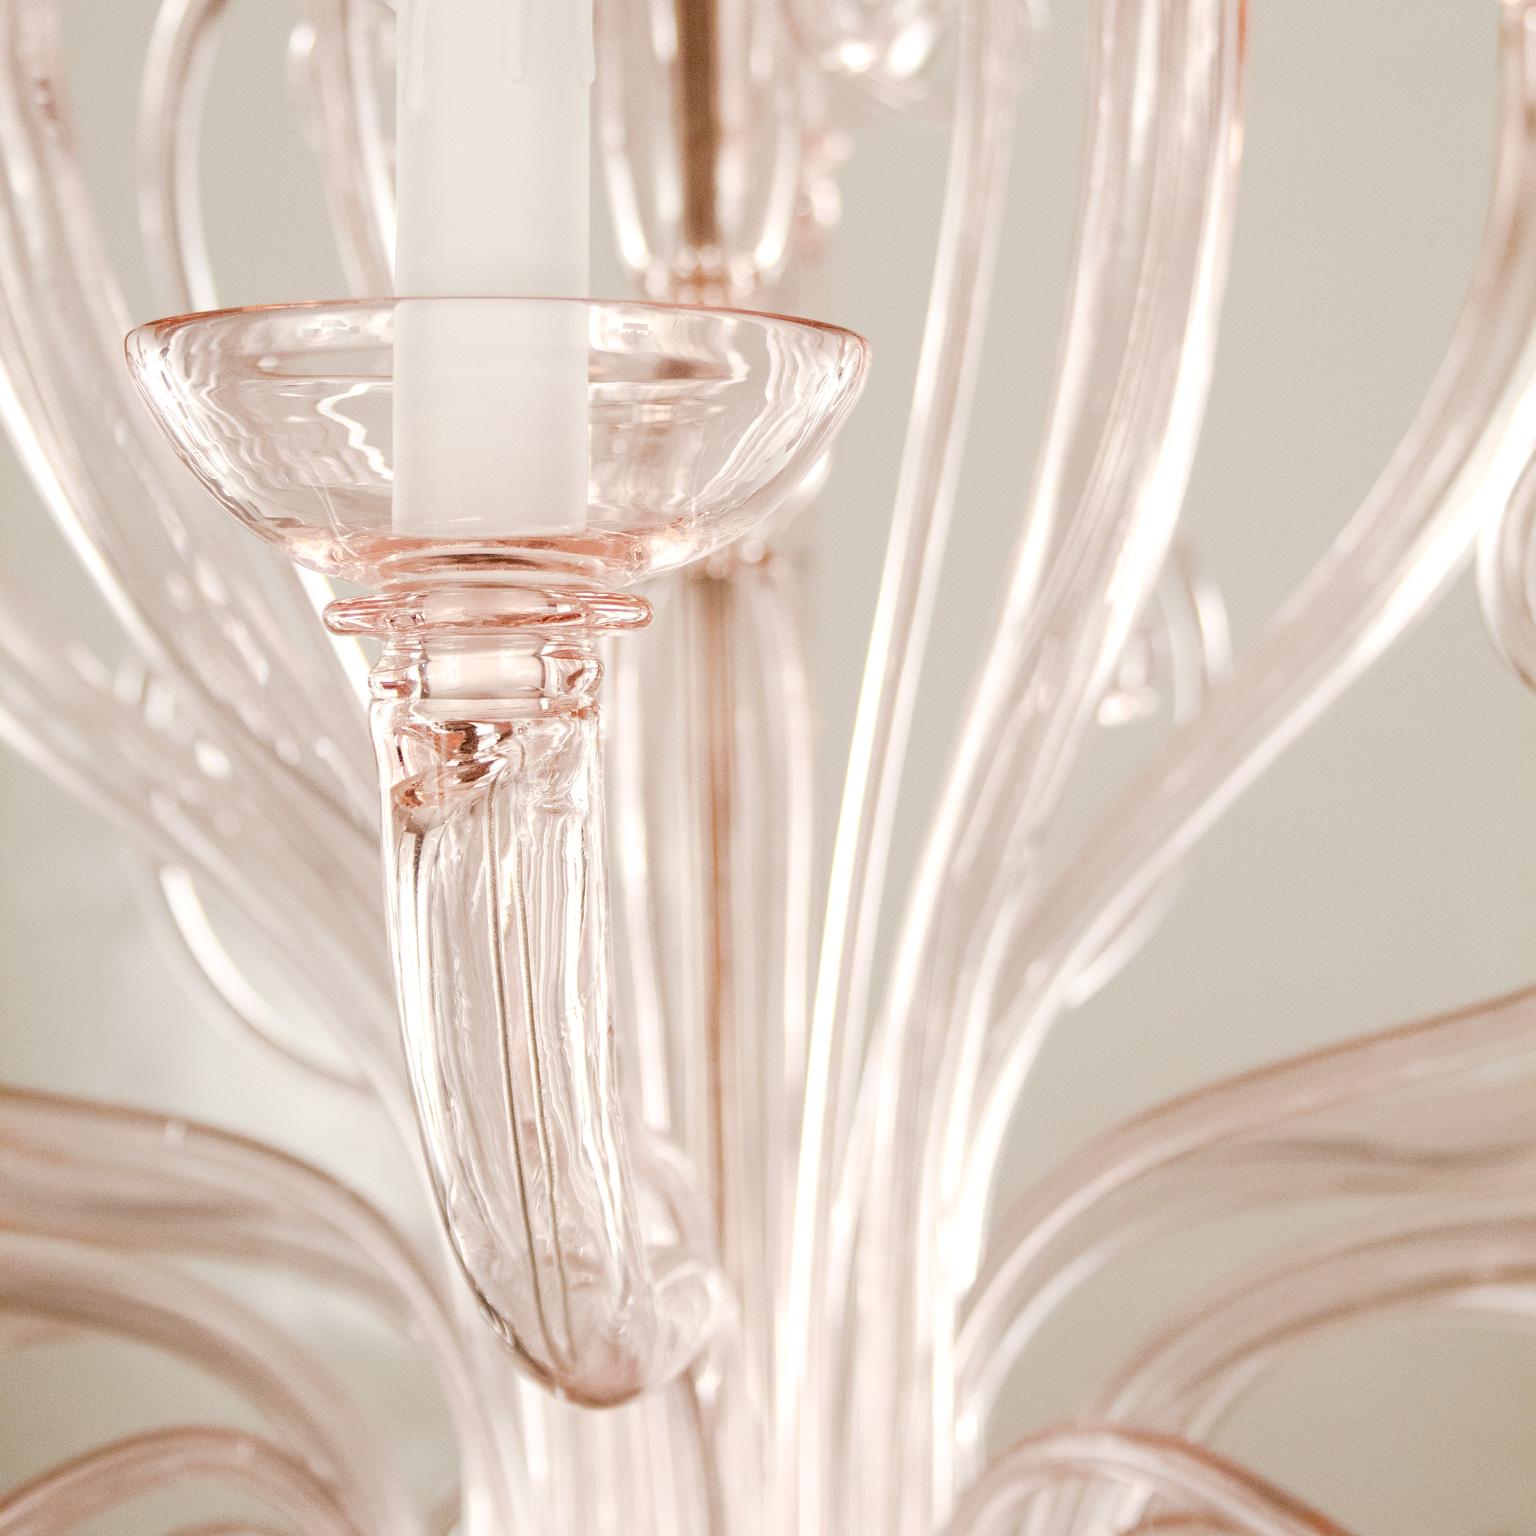 Melisanda ist ein Kronleuchter aus venezianischem Glas, der sich durch einen romantischen und zarten rosa Farbton auszeichnet. Dies ist eines der neuen Beleuchtungsprodukte von Multiforme, das vom Design der klassischen Kronleuchter inspiriert ist,